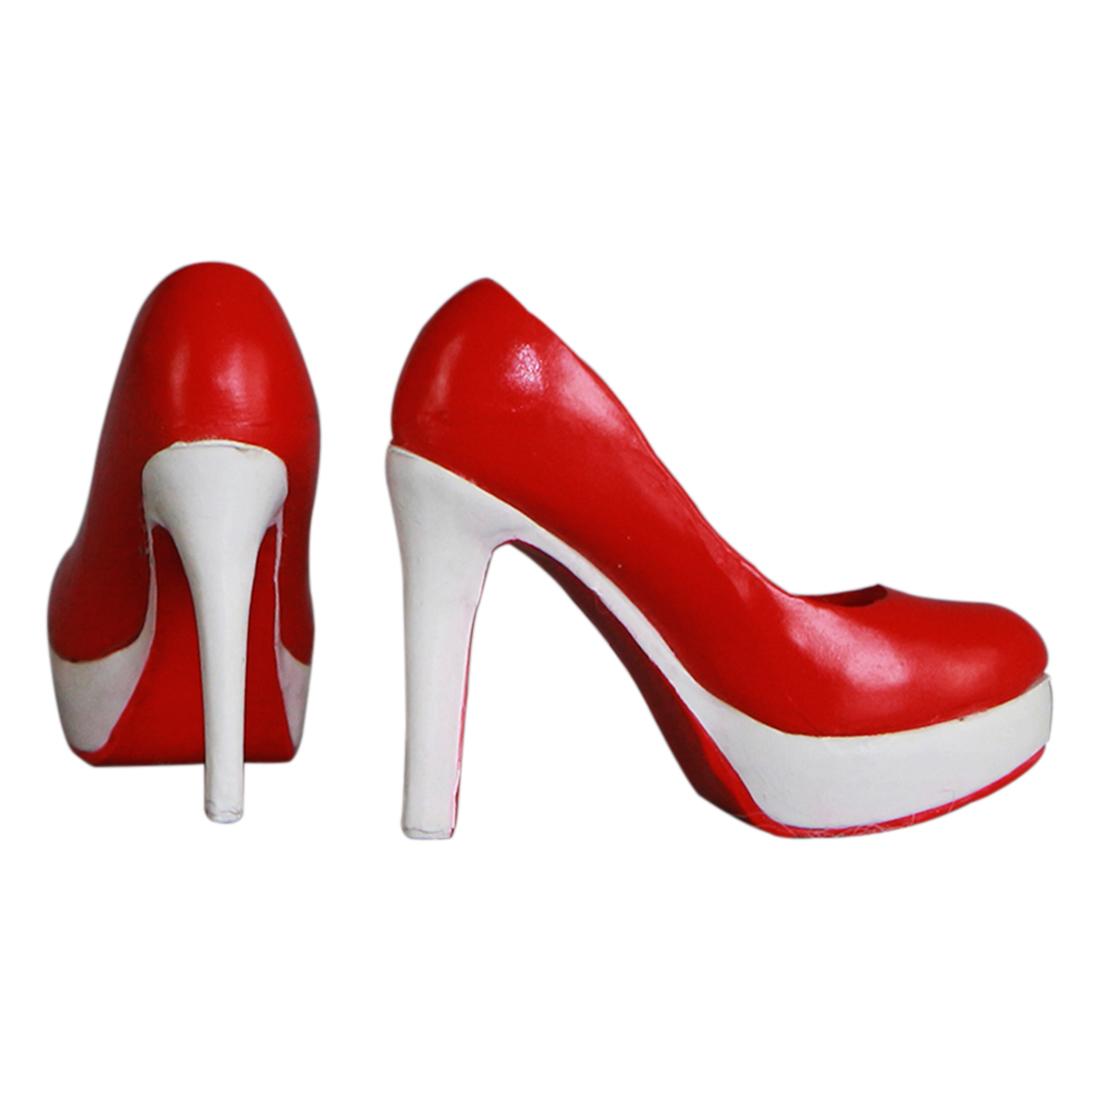 Изображение товара: 2019 горячая Распродажа Туфли на высоком каблуке для 1/6 масштаба фигурки женщины модель обучающая игрушка Подарки для детей взрослых 5 цветов